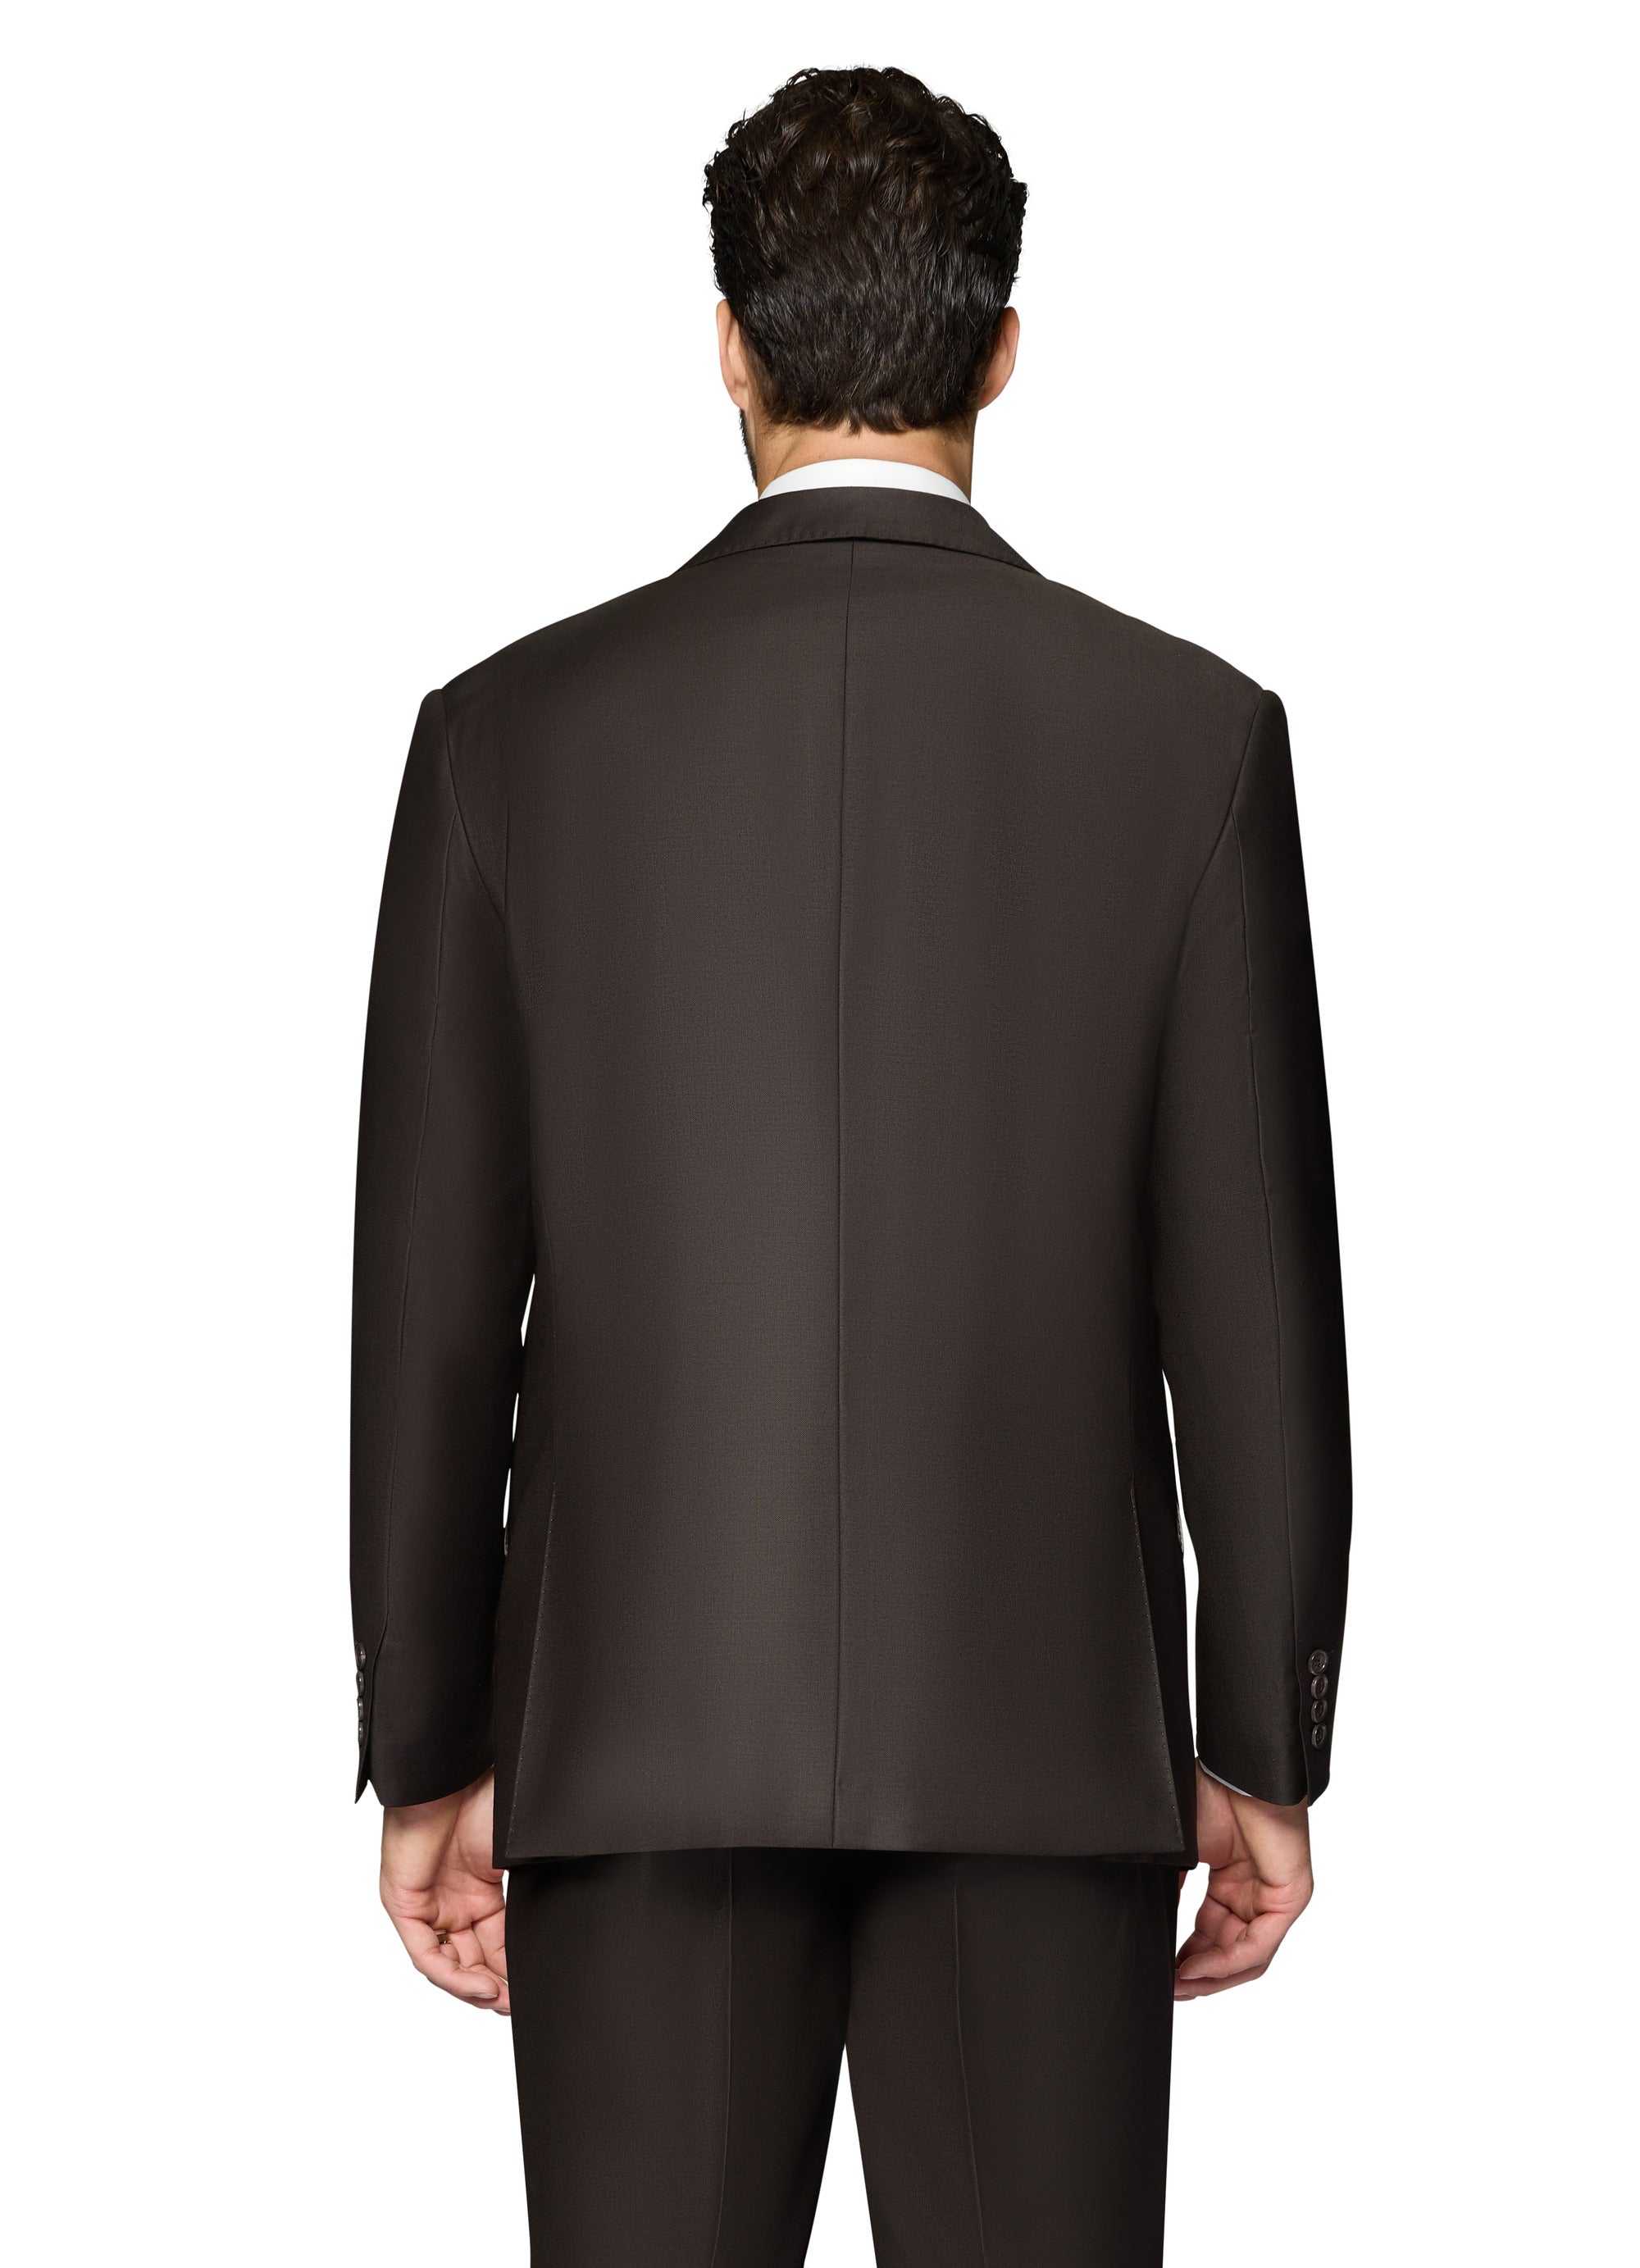 Berragamo Essex Elegant - Faille Wool Solid Suit - Brown